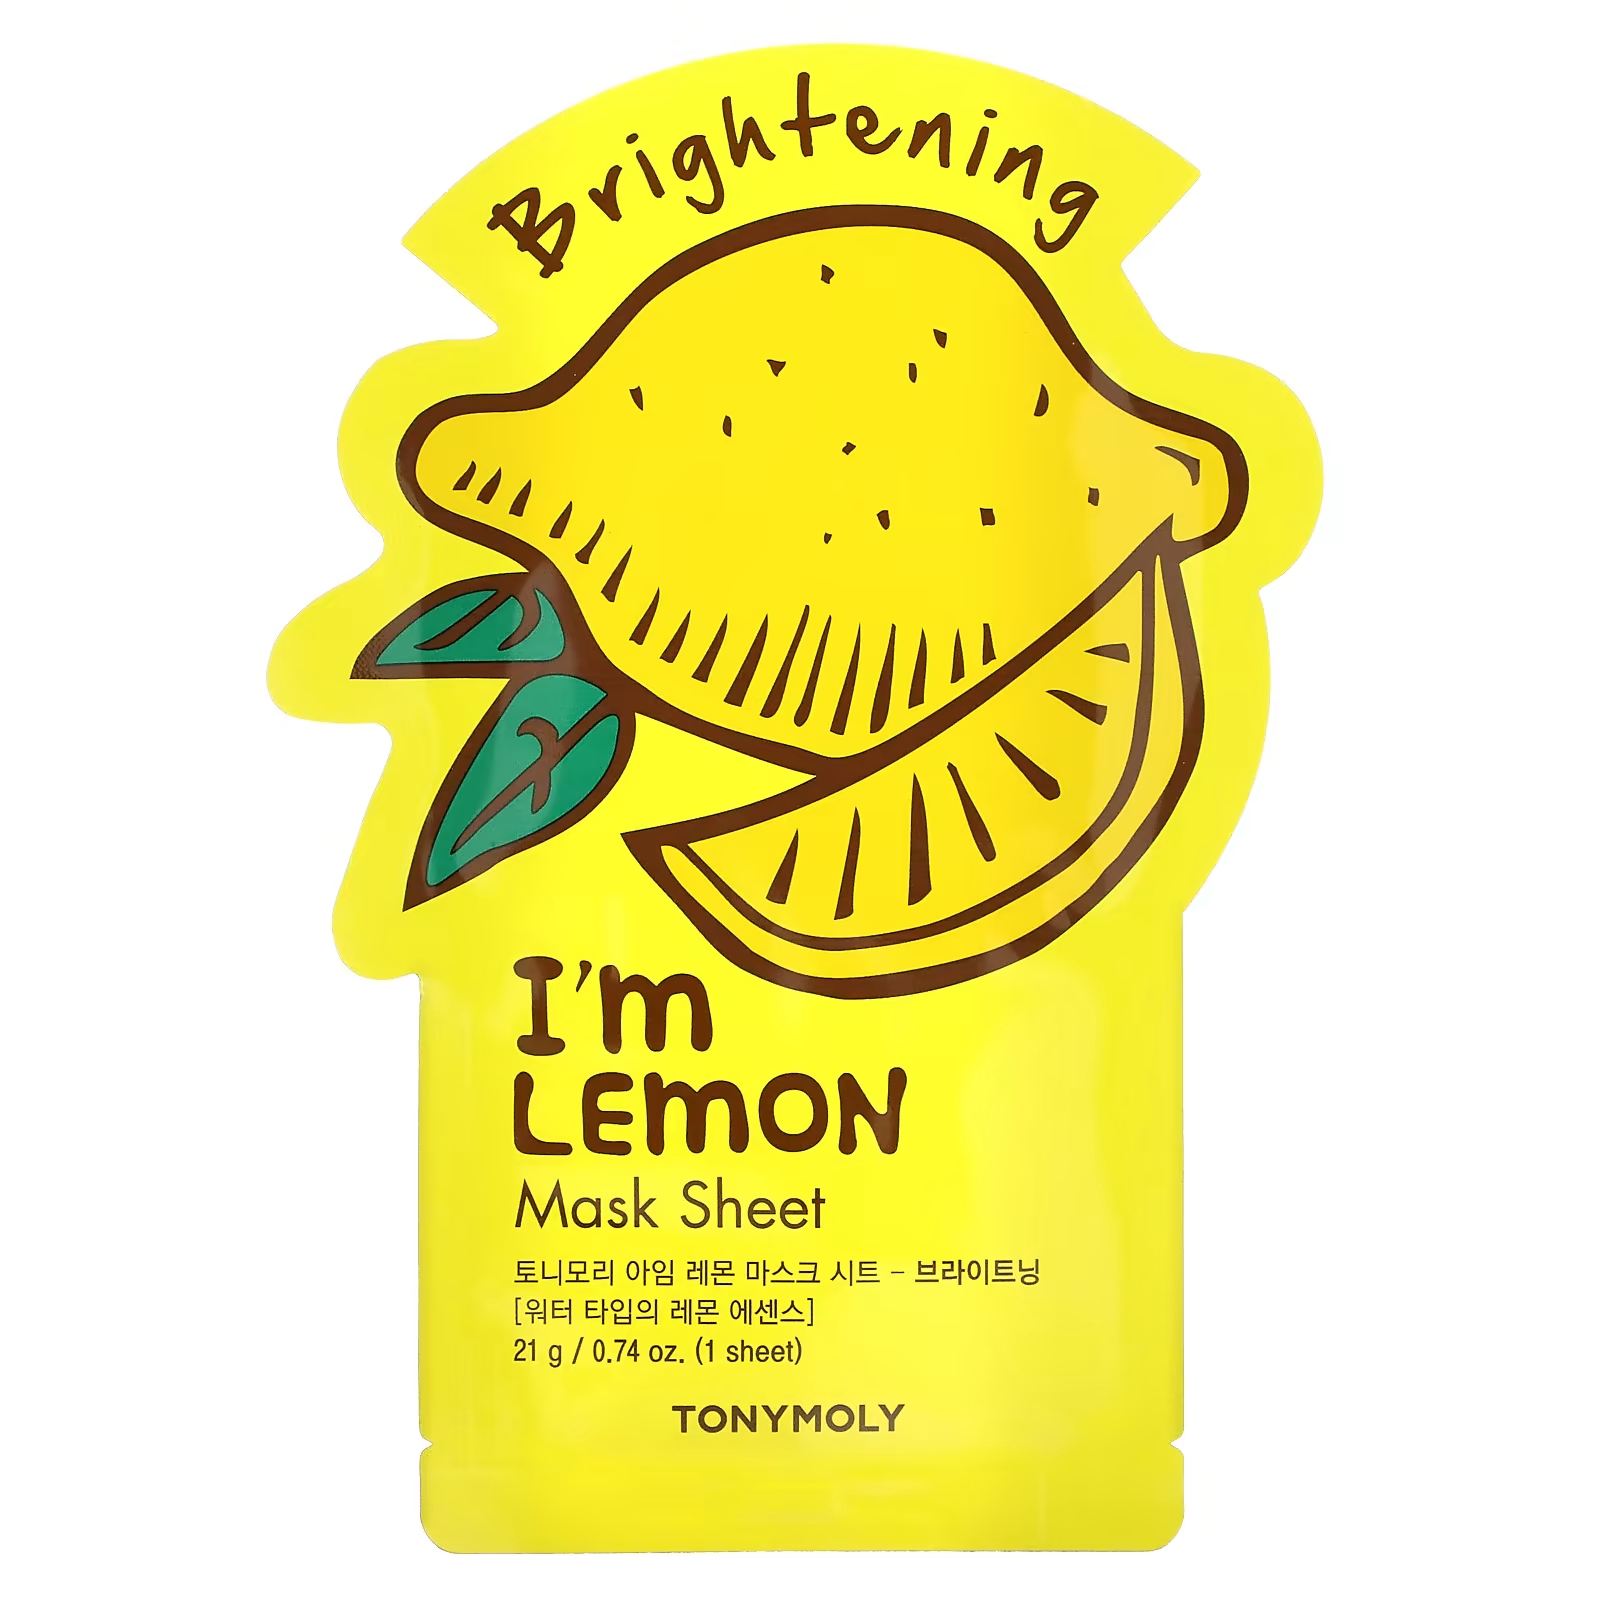 Tony Moly I'm Lemon Осветляющая косметическая маска, 1 шт., 0,74 унции (21 г) tony moly i m rice тканевая маска для чистой кожи 1 шт 21 г 0 74 унции